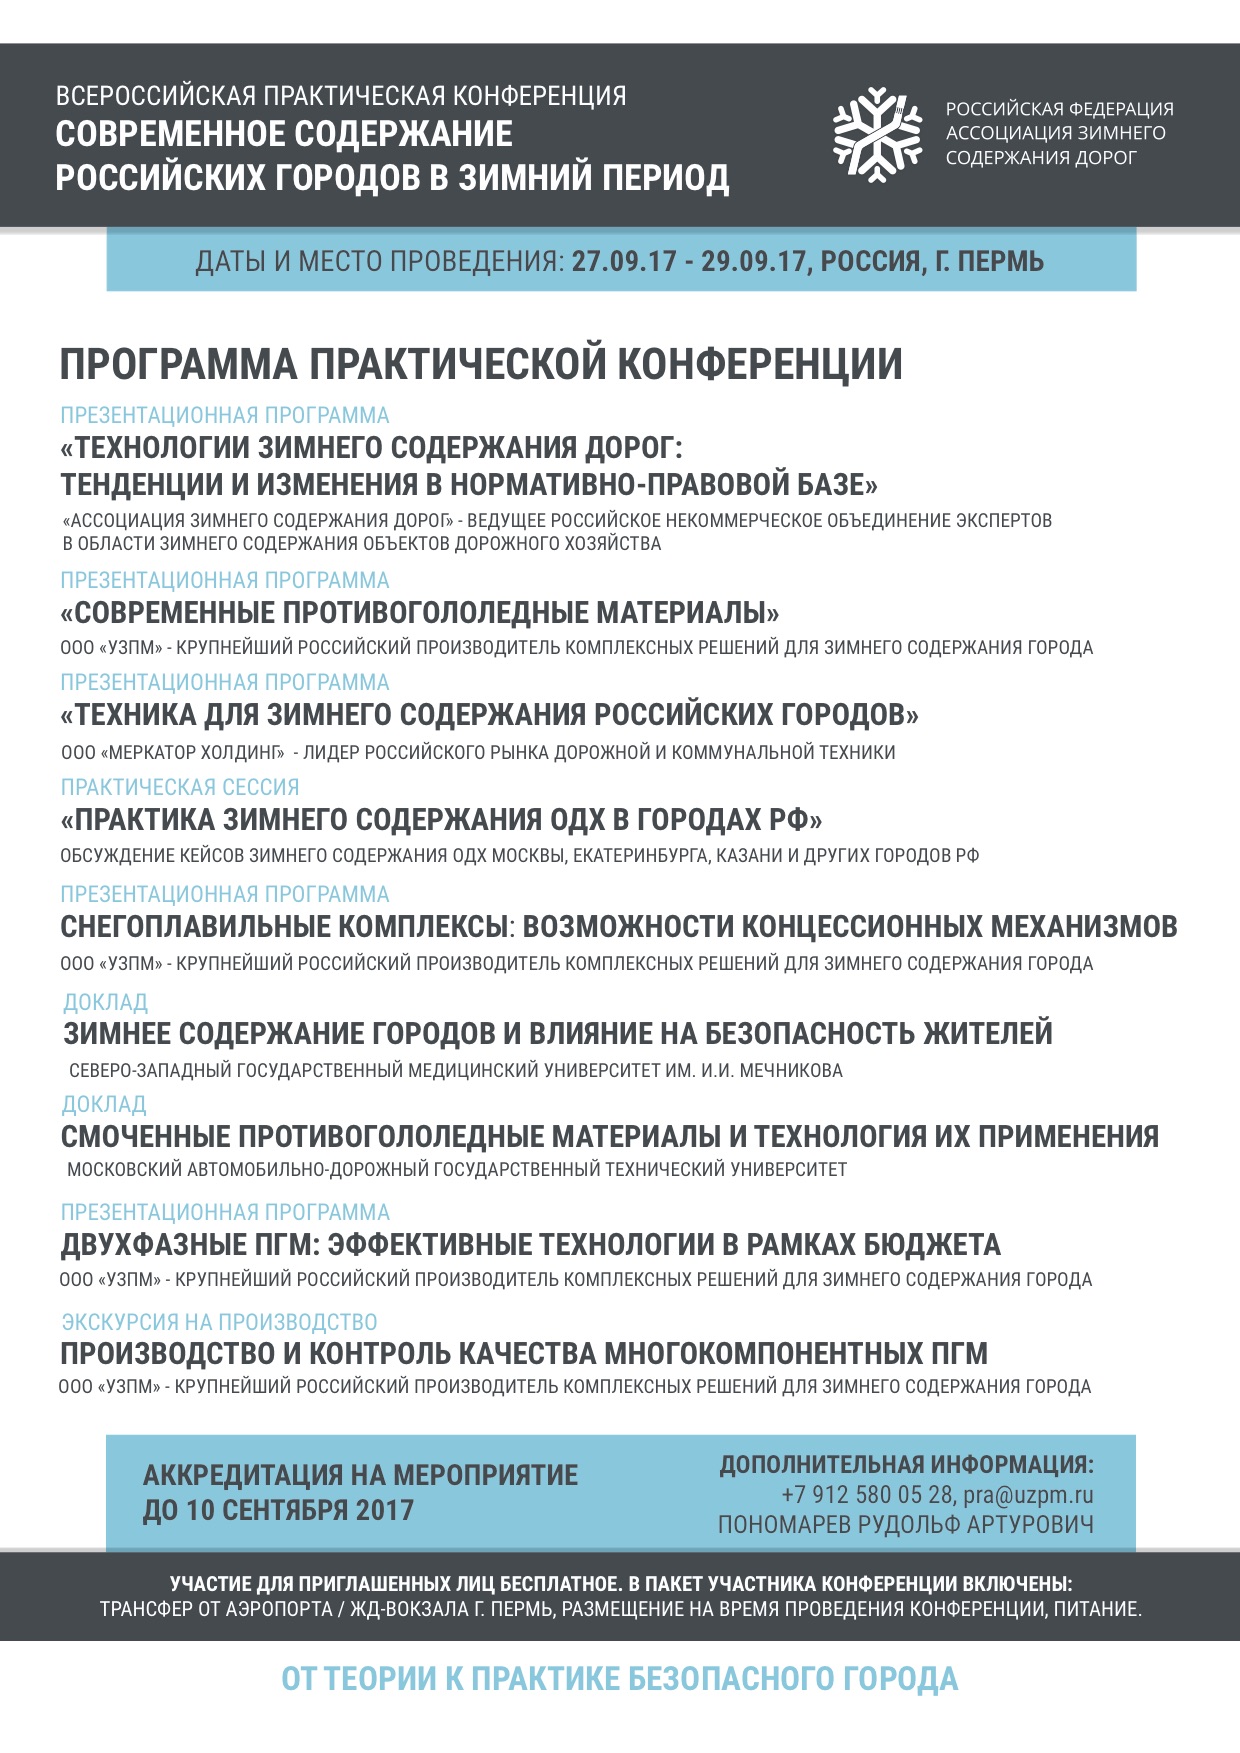 Всероссийская практическая конференция по зимнему содержанию дорог Ассоциации РосЗимДор